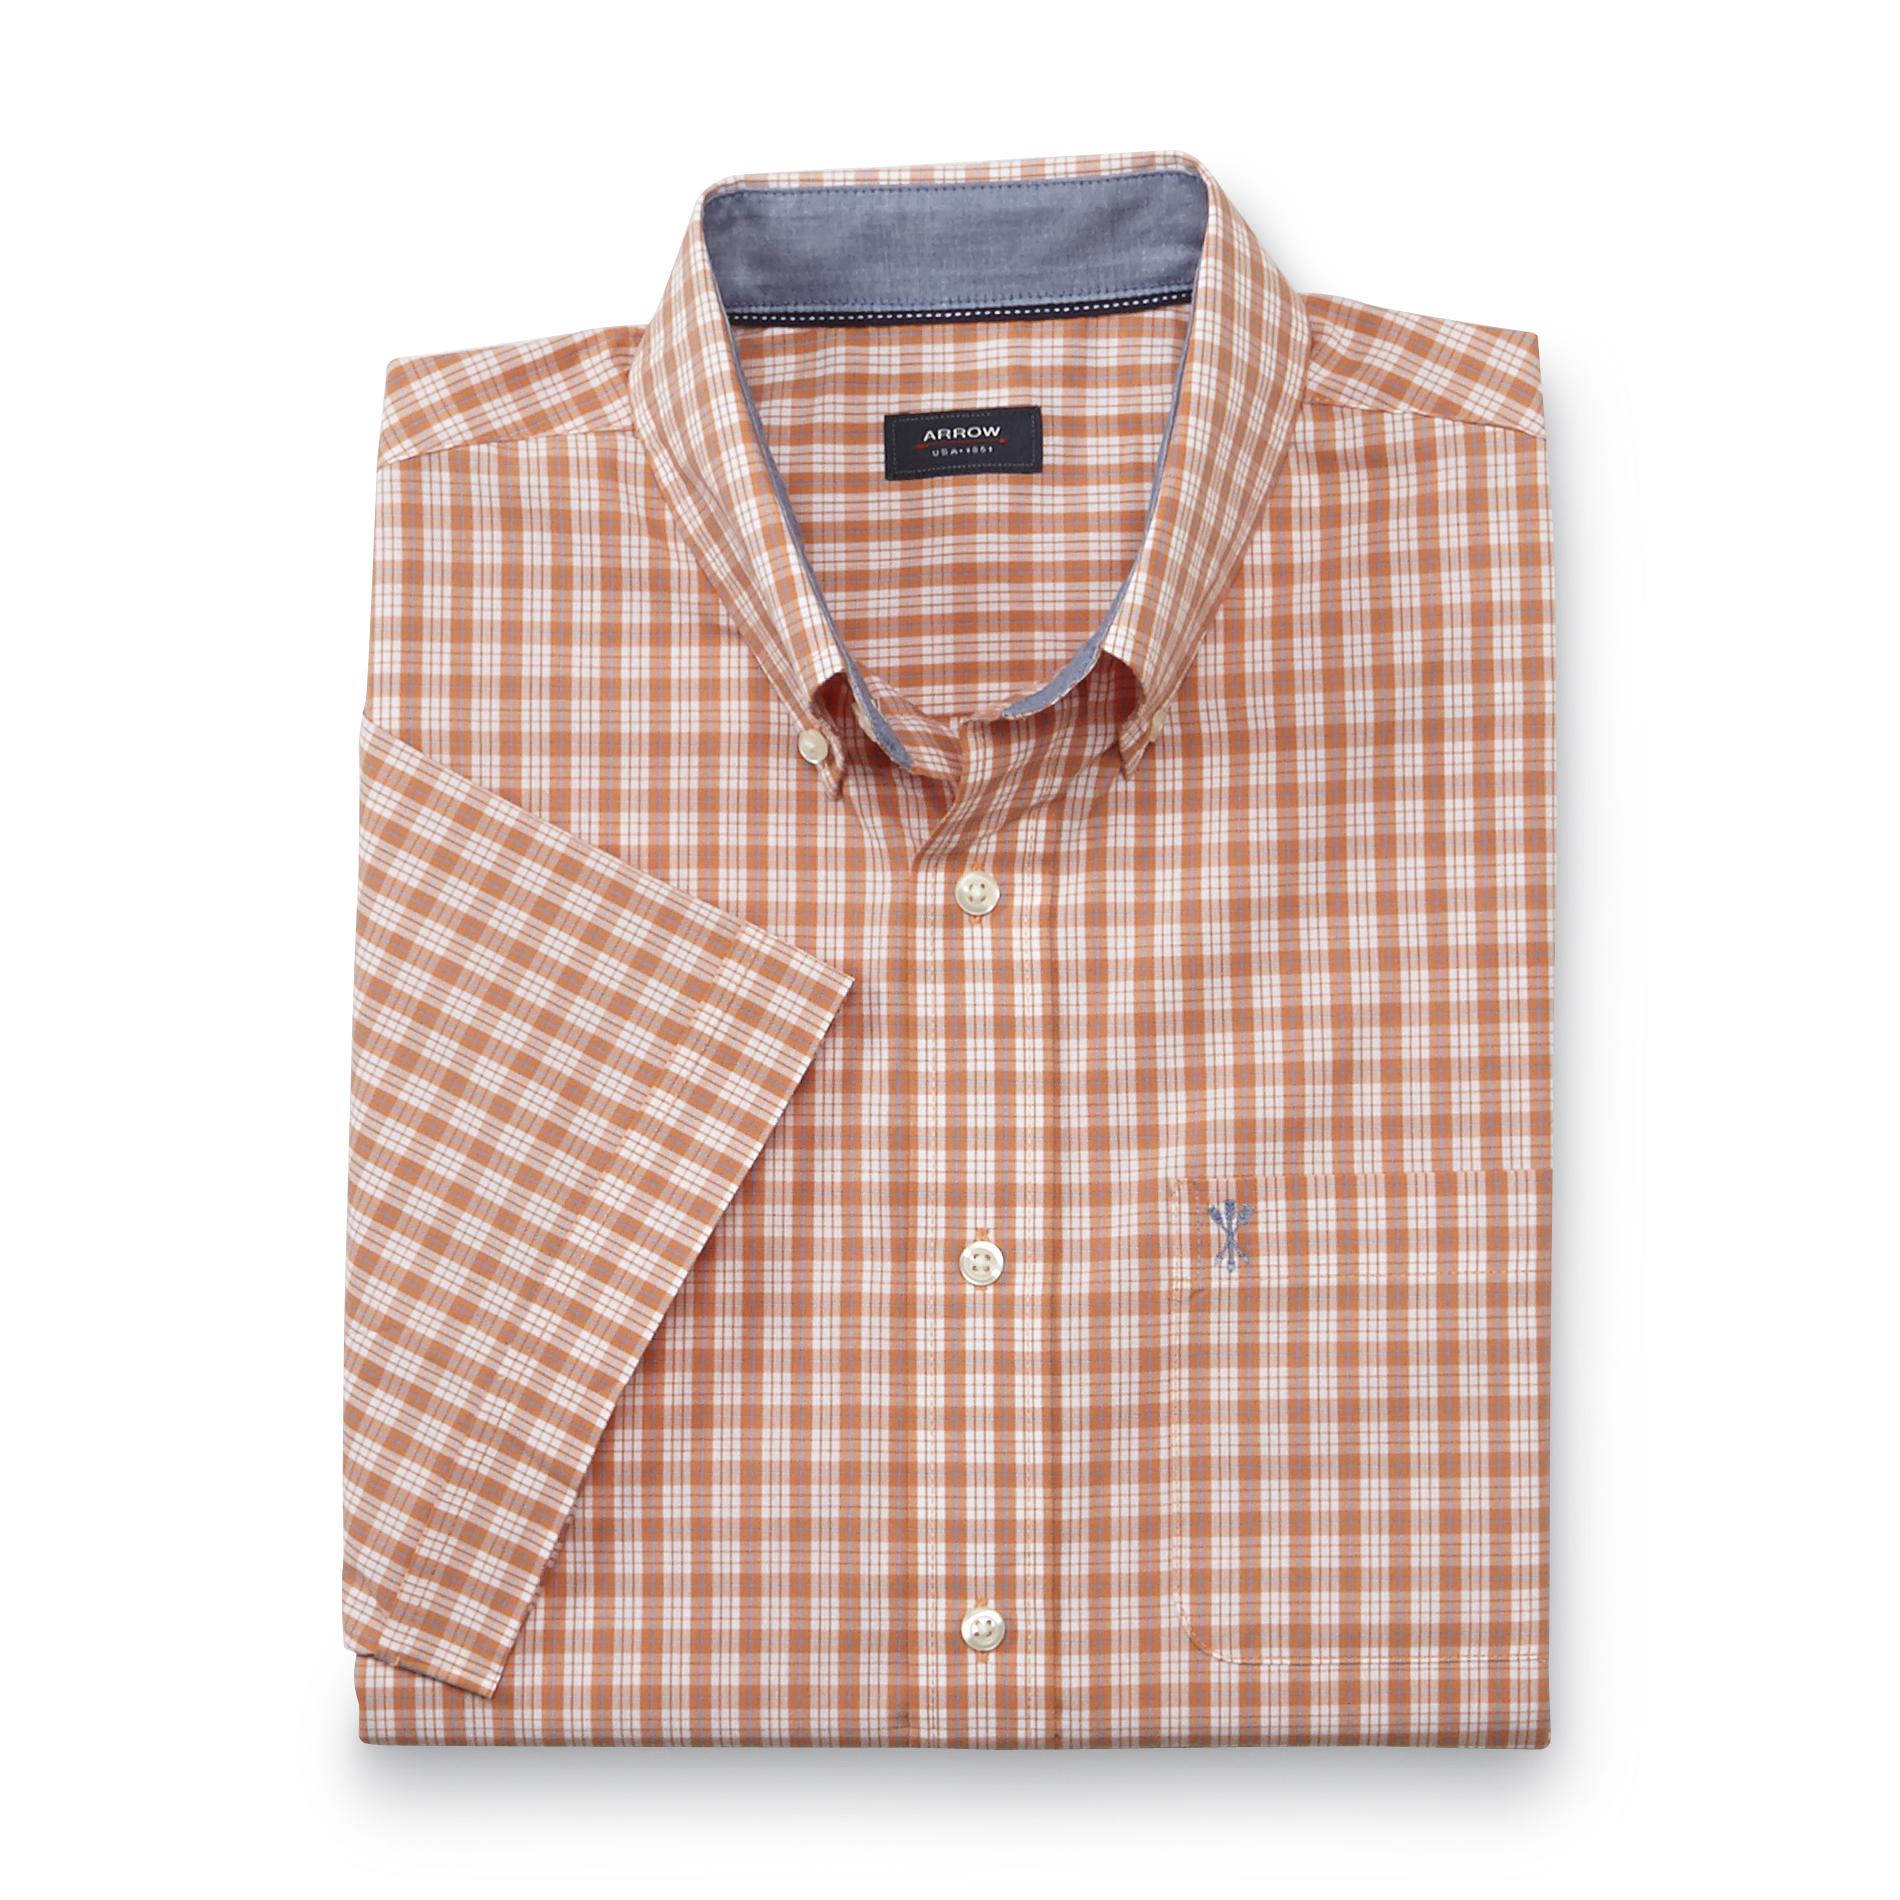 Arrow Men's Short-Sleeve Poplin Button-Front Shirt - Plaid